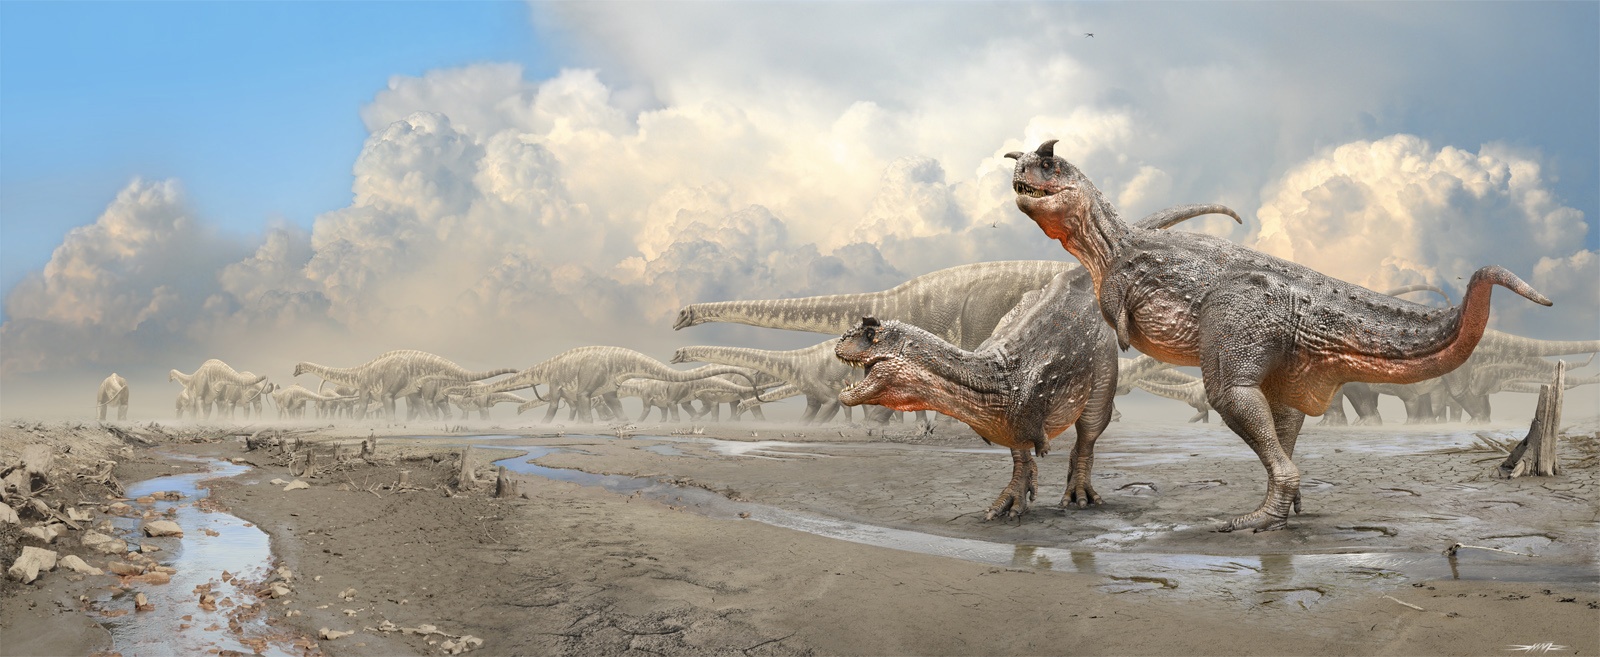 Цифровая палеонтология: как информационные технологии помогают изучать динозавров - 16